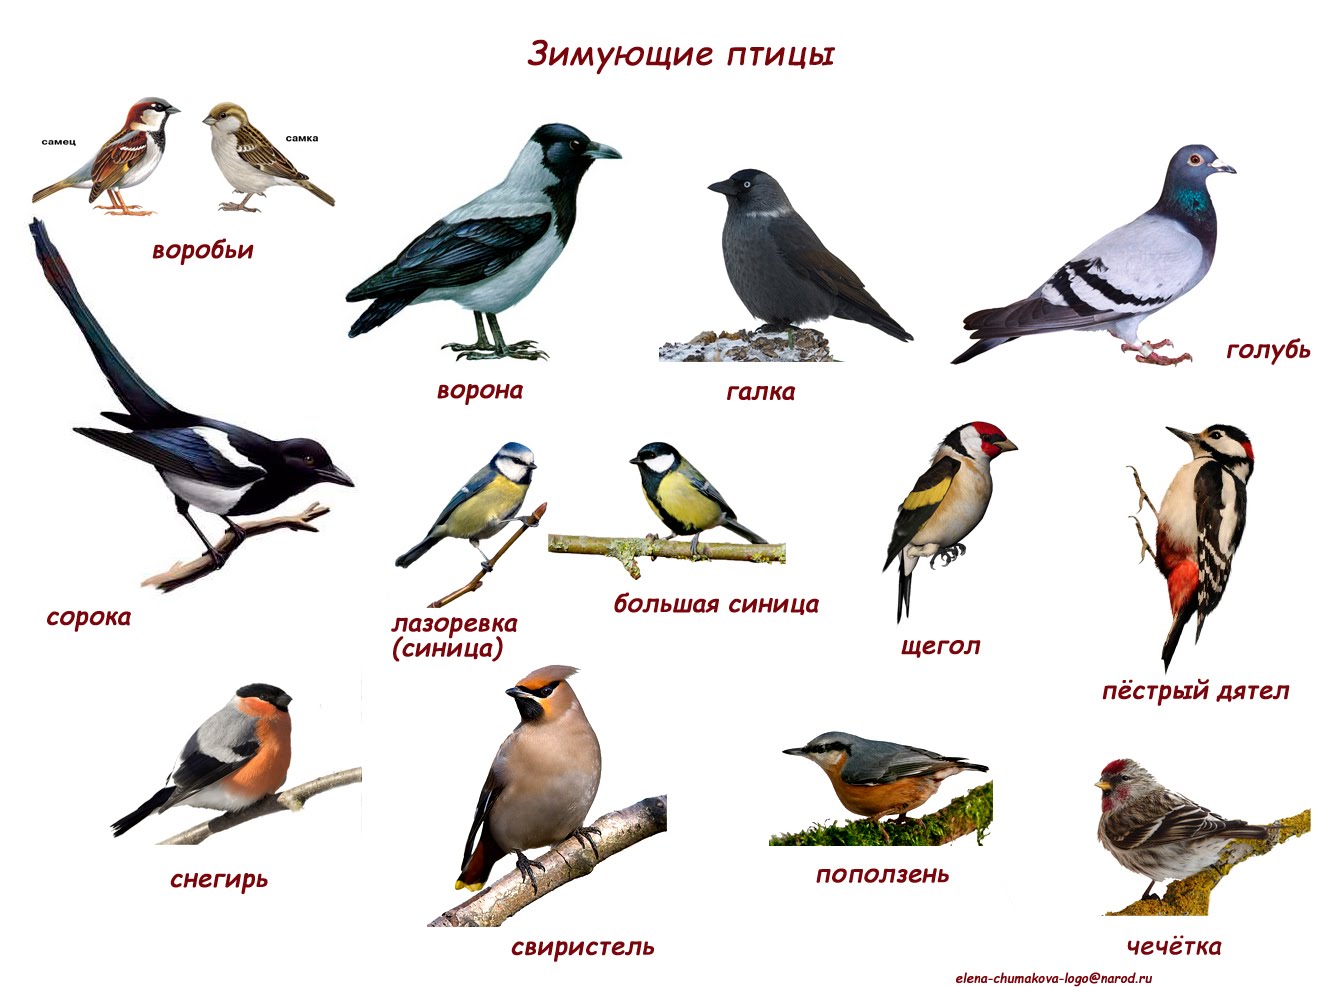 Птицы республики алтай фото с названиями и описанием